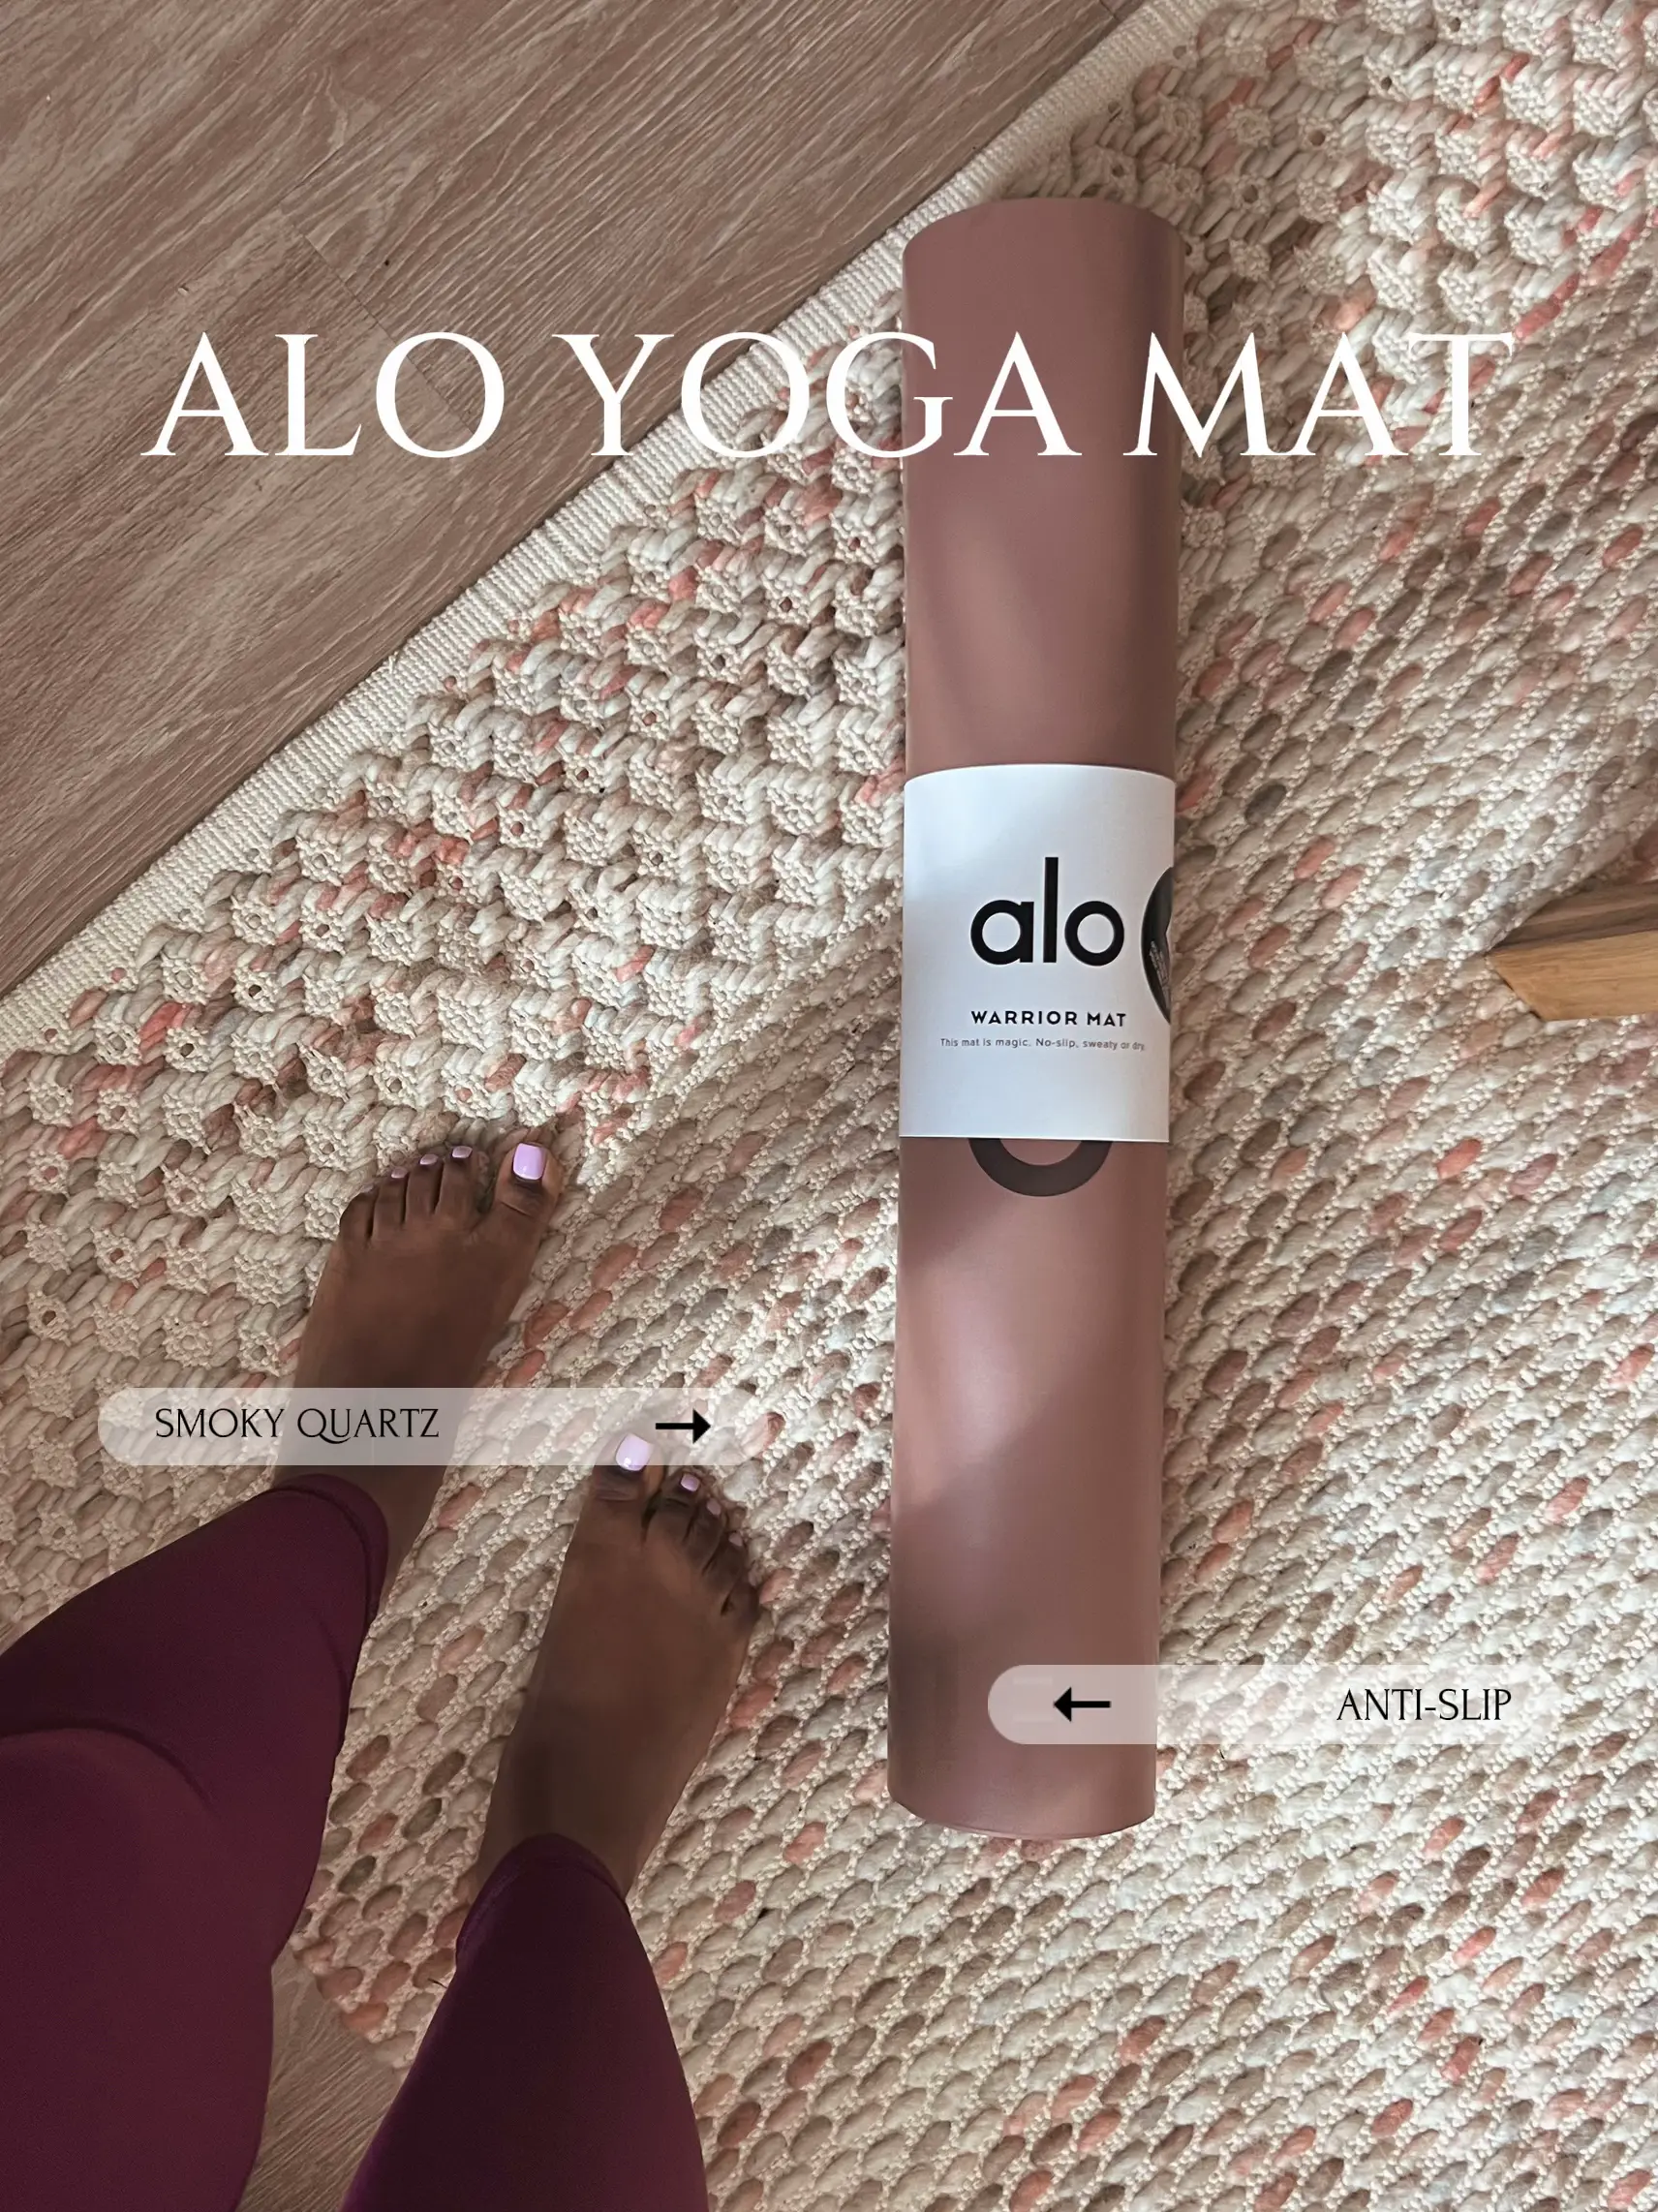 Alo yoga airbrush streamline - Gem